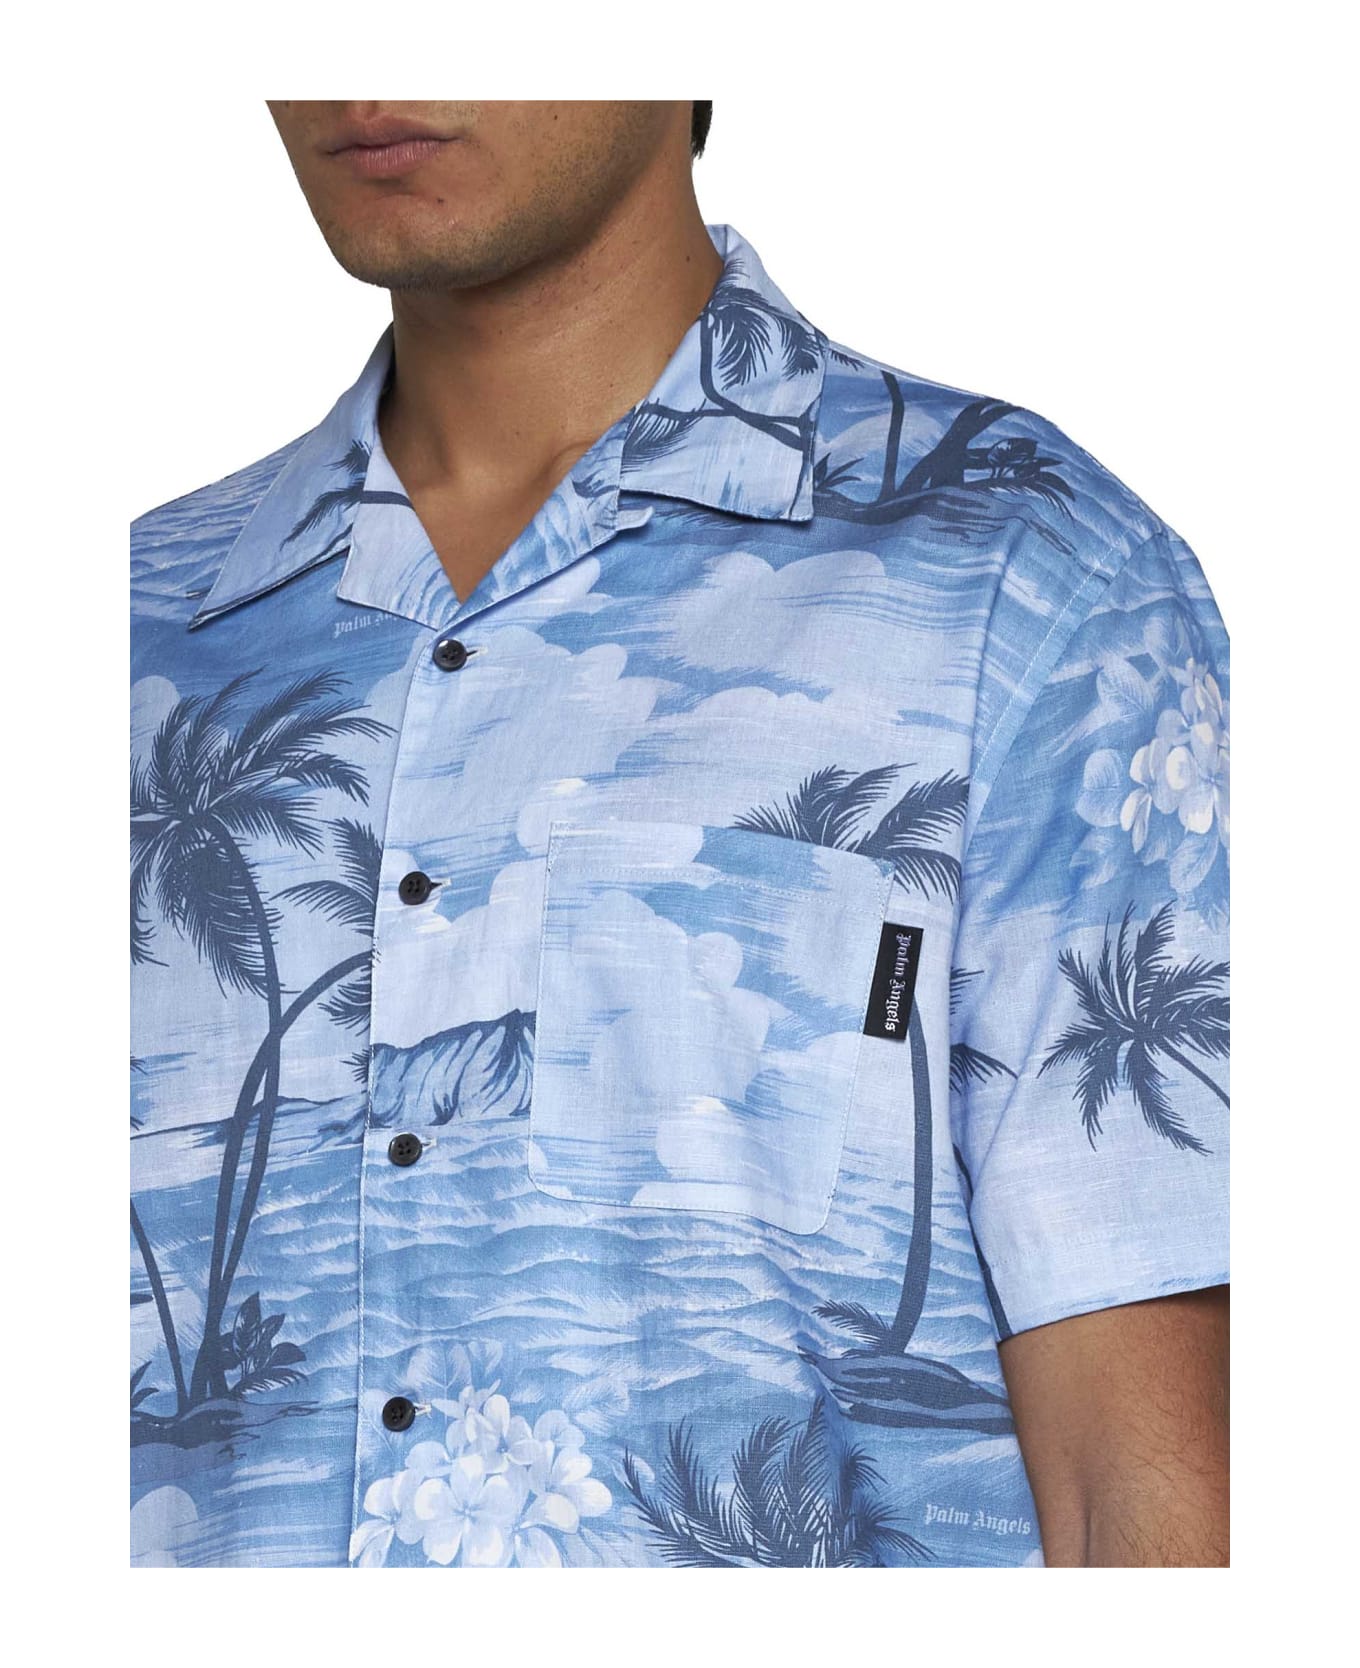 Palm Angels Shirt - Indigo blue indigo